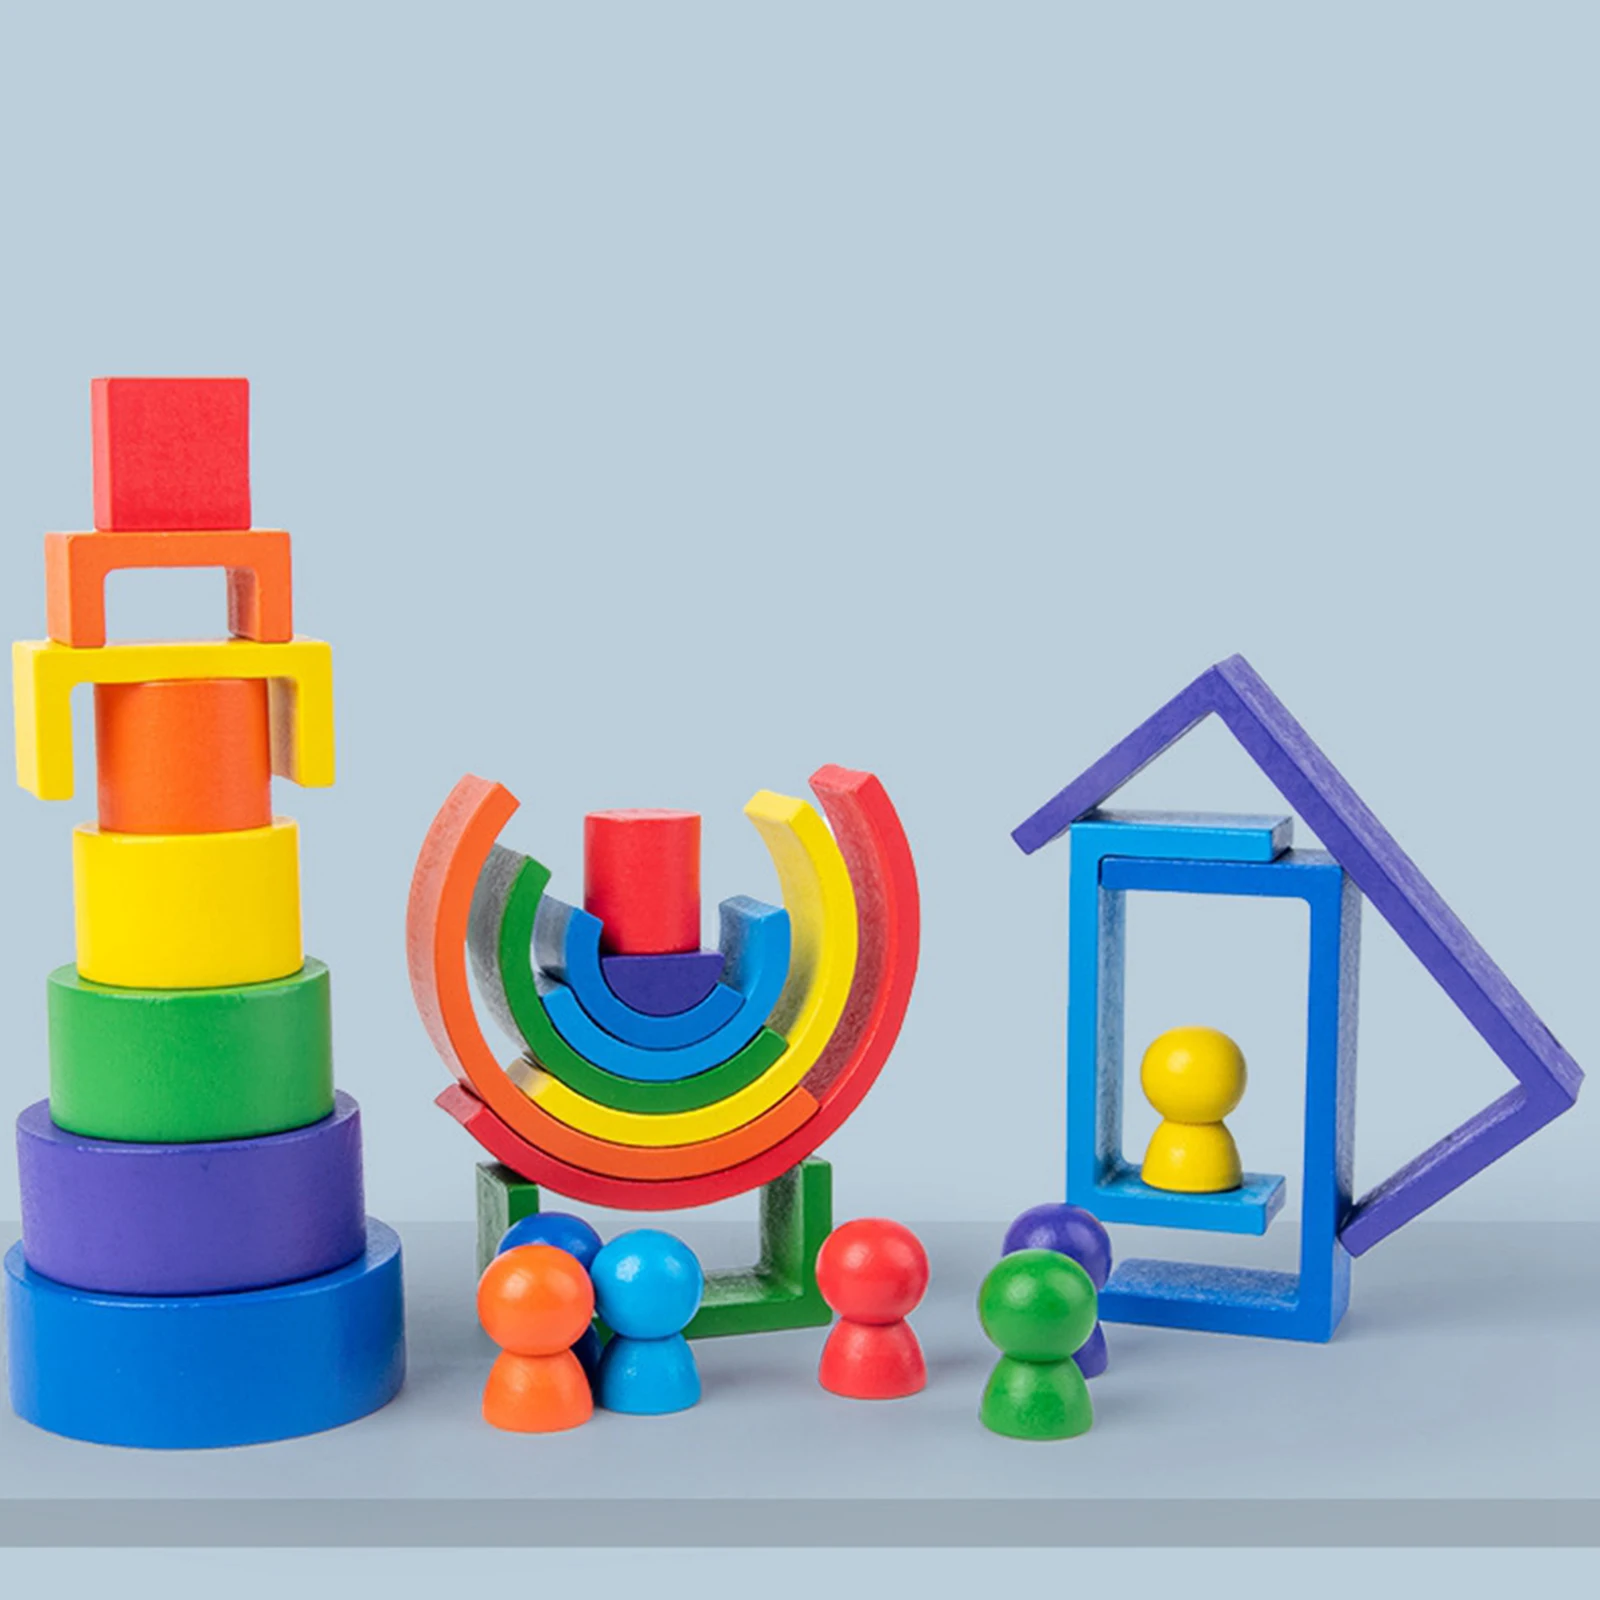 

Деревянная Радужная Пазл-конструктор, Геометрическая доска для раннего развития, развивающие игрушки для детей, малышей